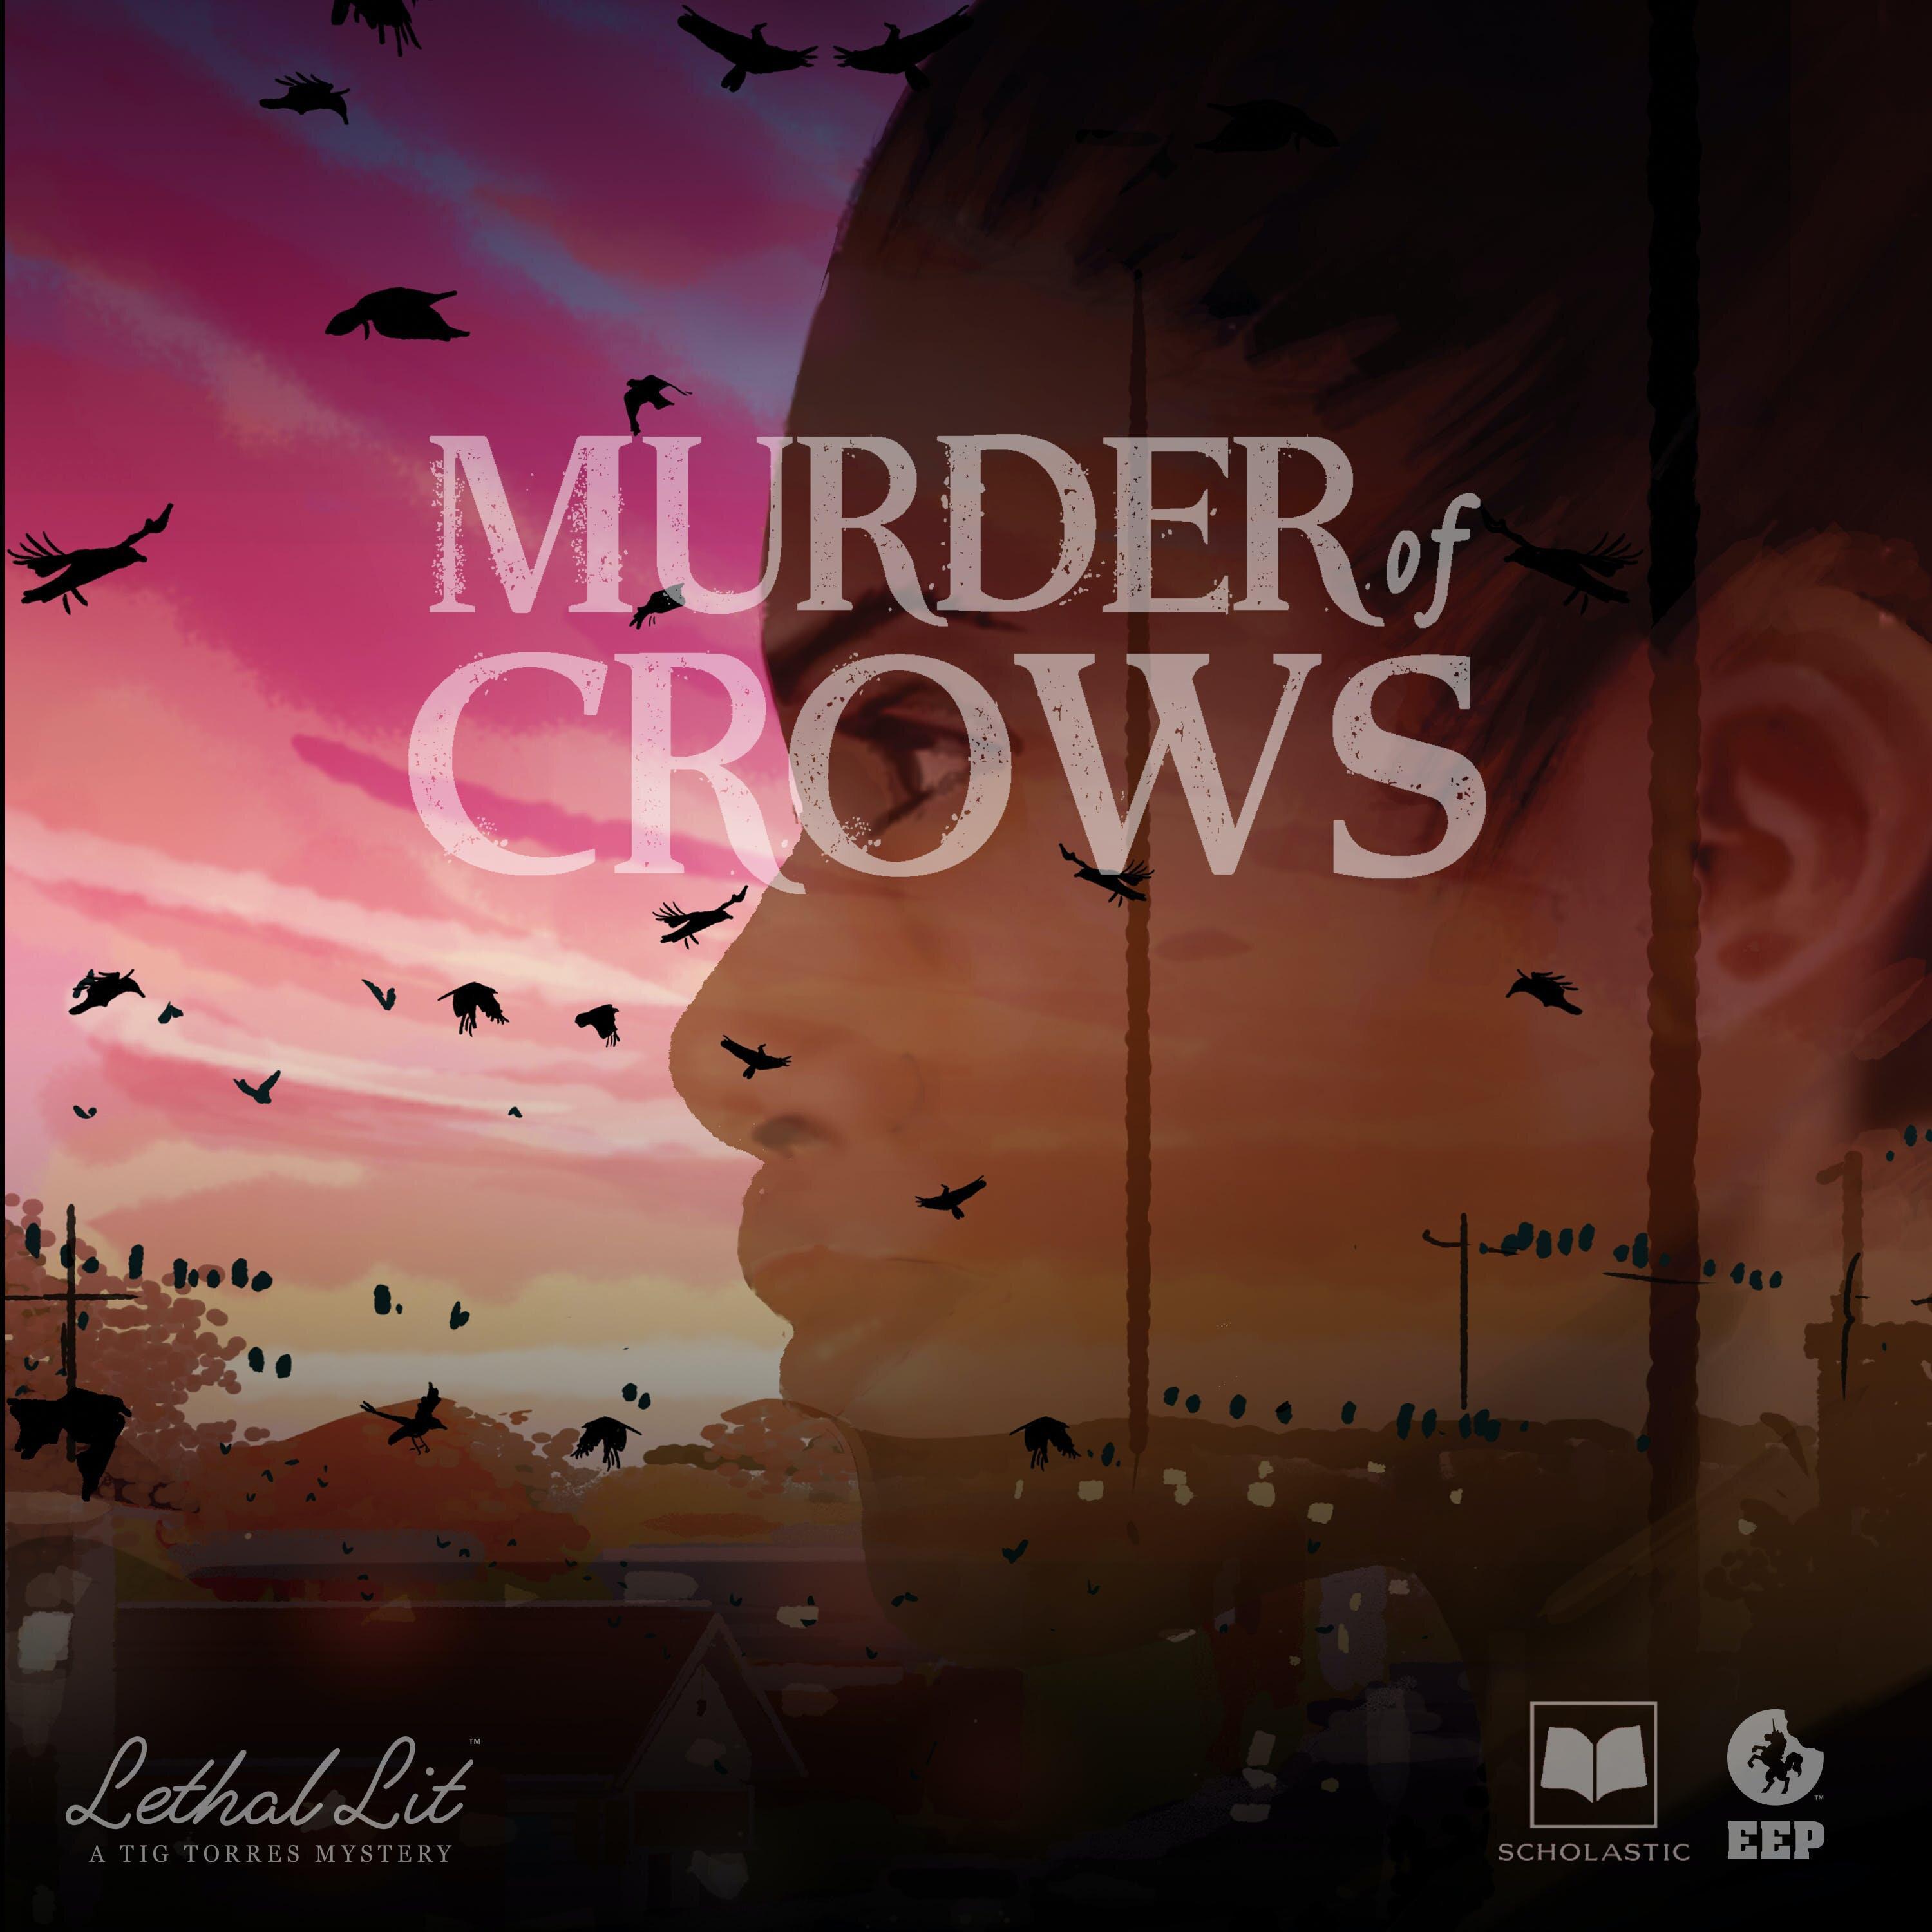 Sneak Peek — Lethal Lit: ”Murder of Crows” Audiobook